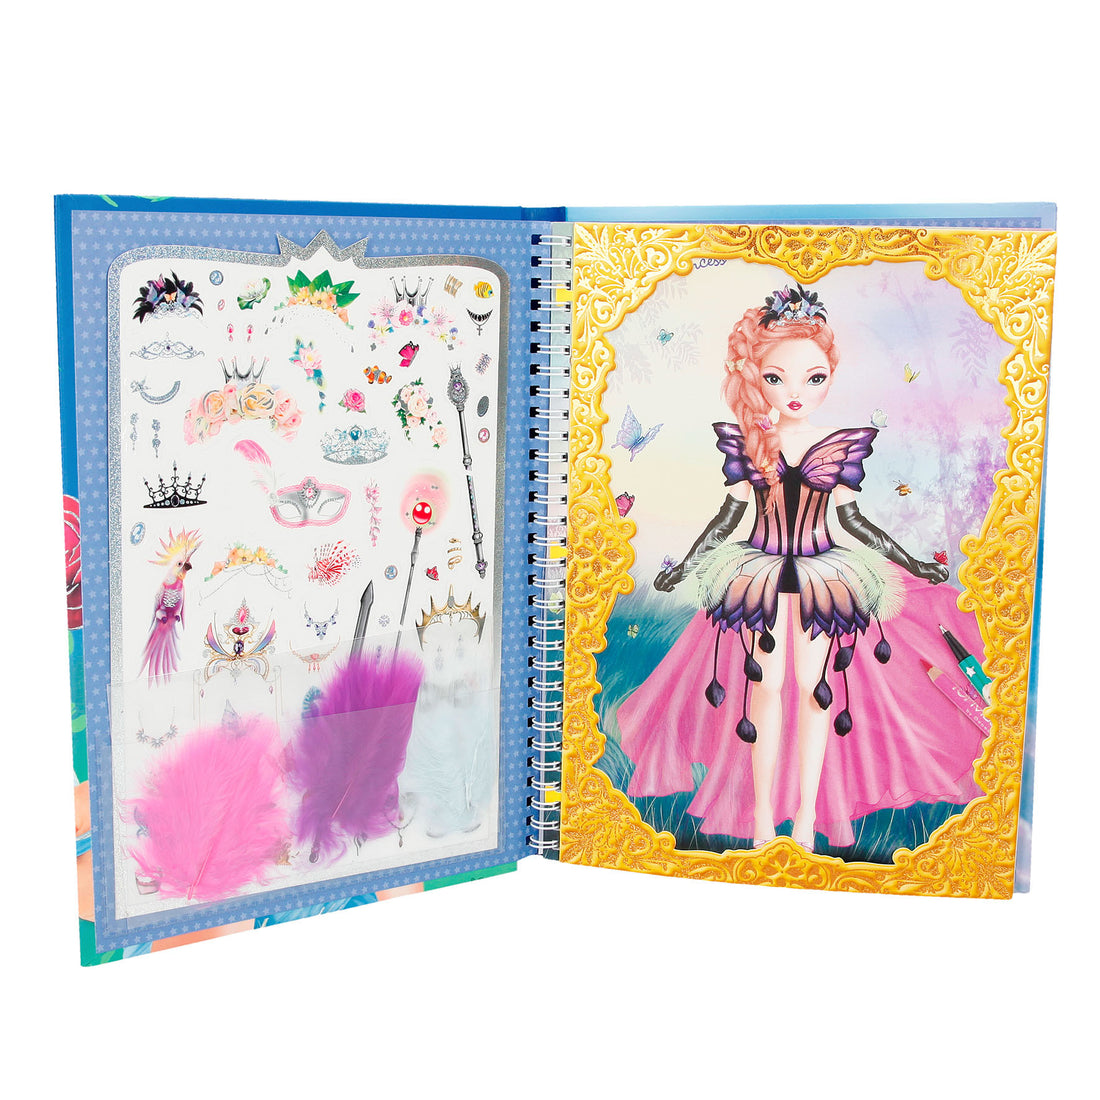 depesche-create-your-fantasy-princess-colouring-book- (2)